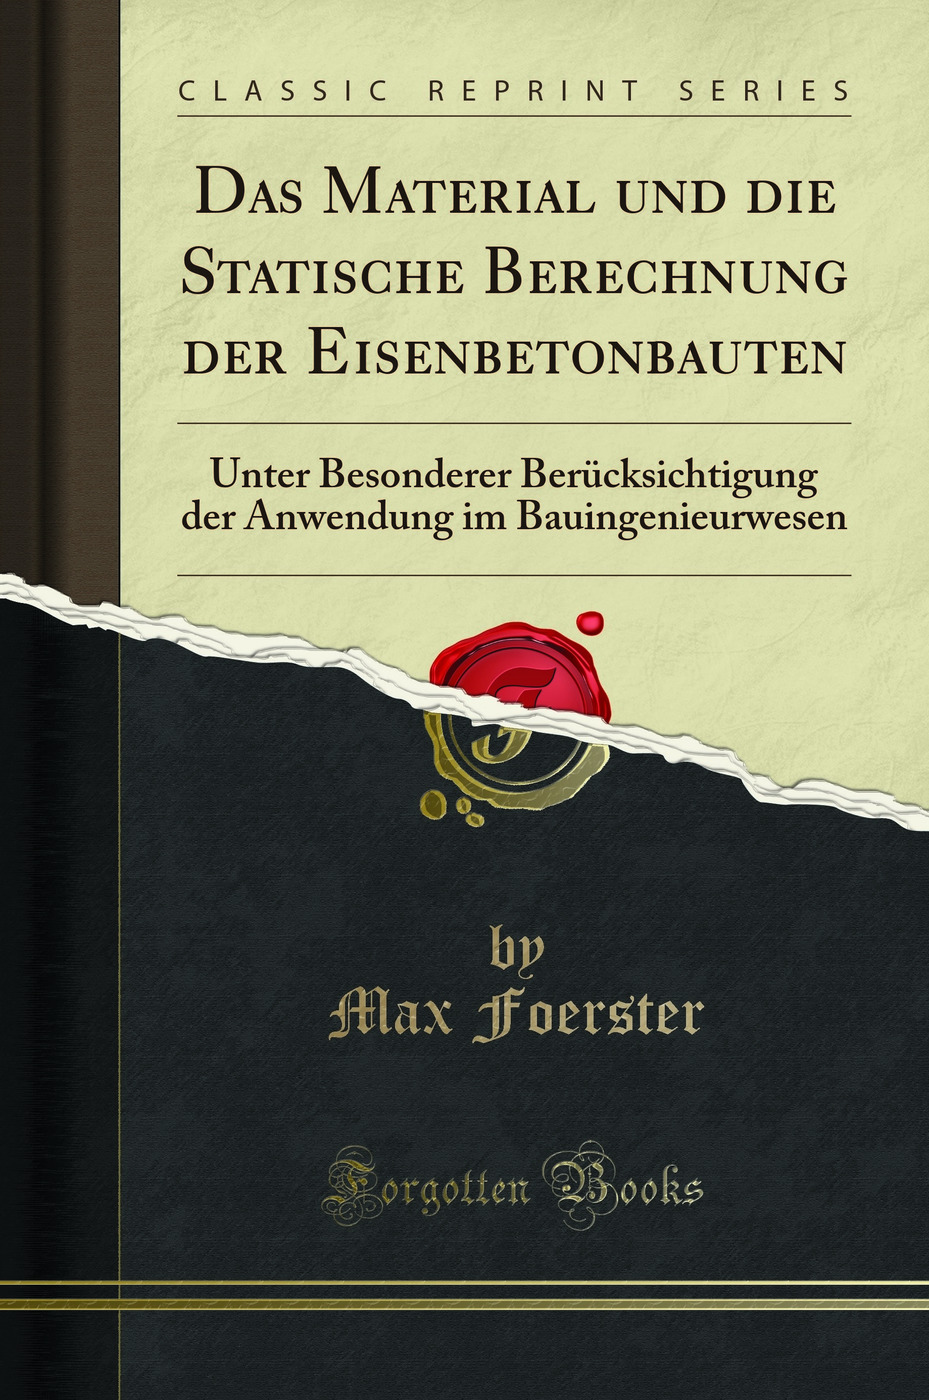 Das Material und die Statische Berechnung der Eisenbetonbauten - Max Foerster